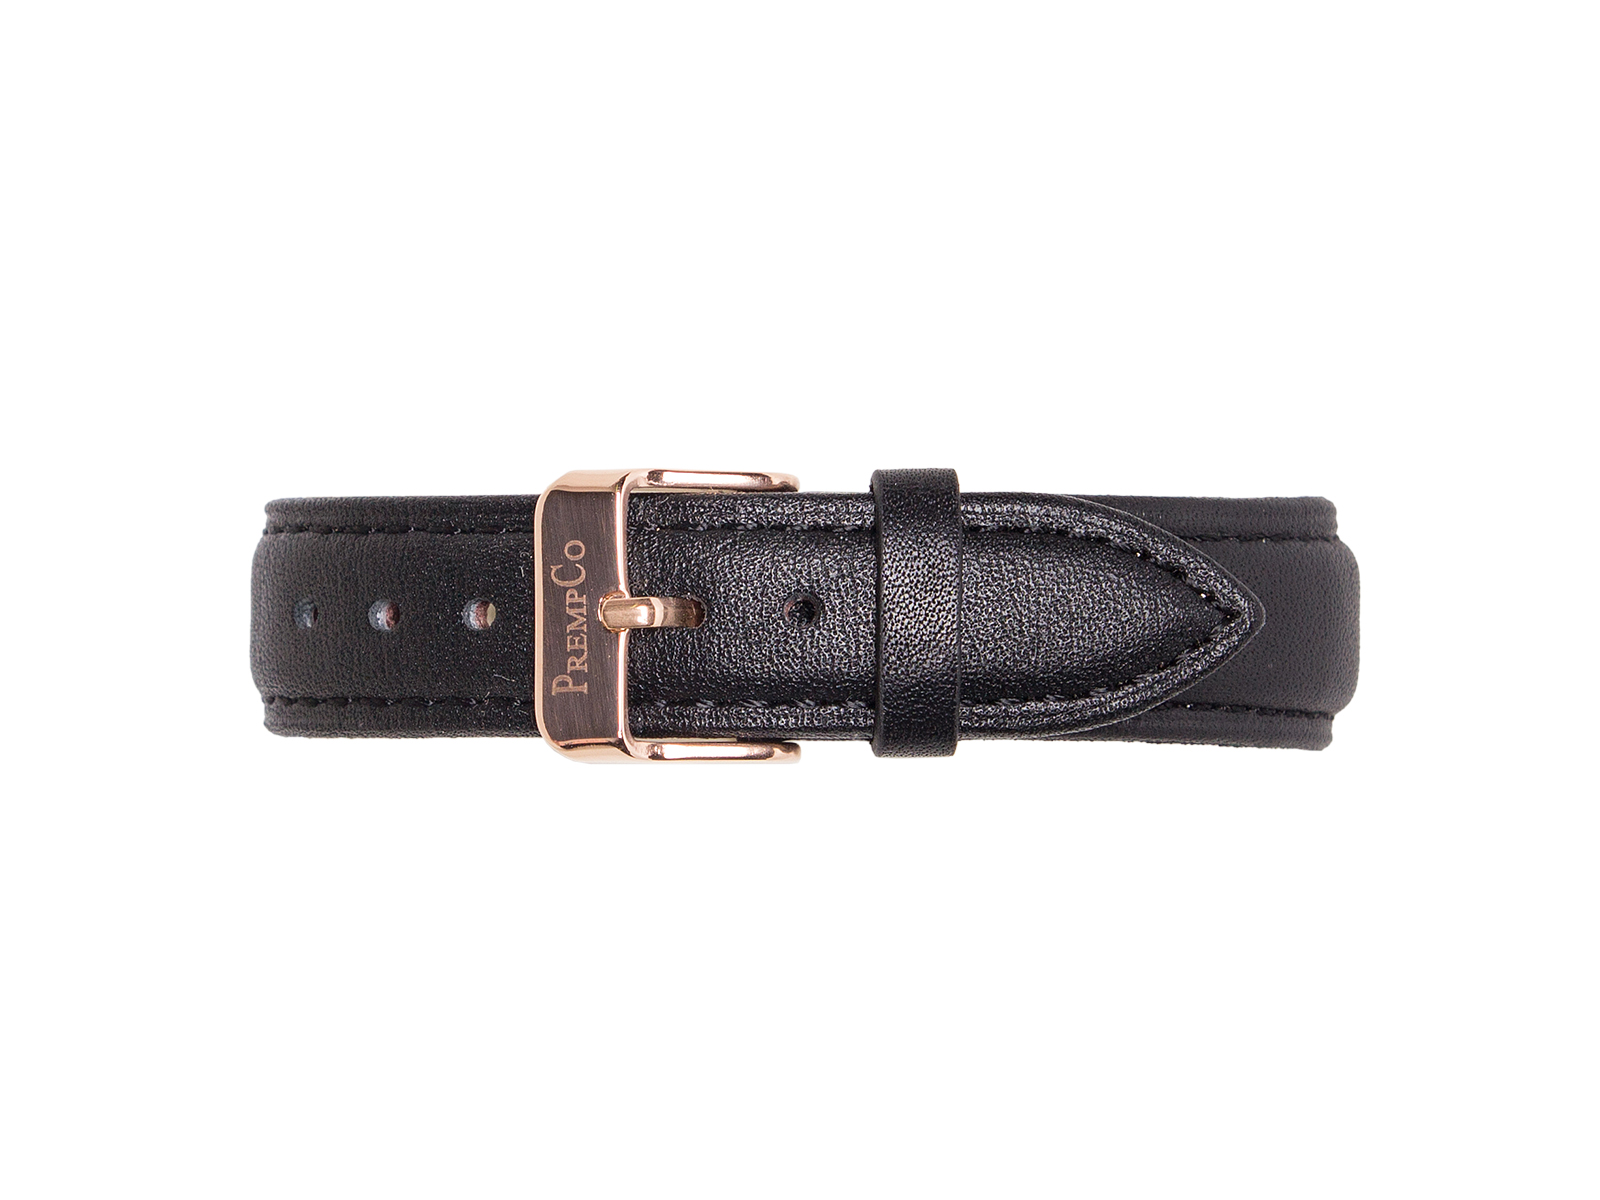 Schwarzes Schnellwechselband PrempCo Leder Uhrenband Uhrenarmband Schnellwechseluhrenband schnellwechseluhrenarmband